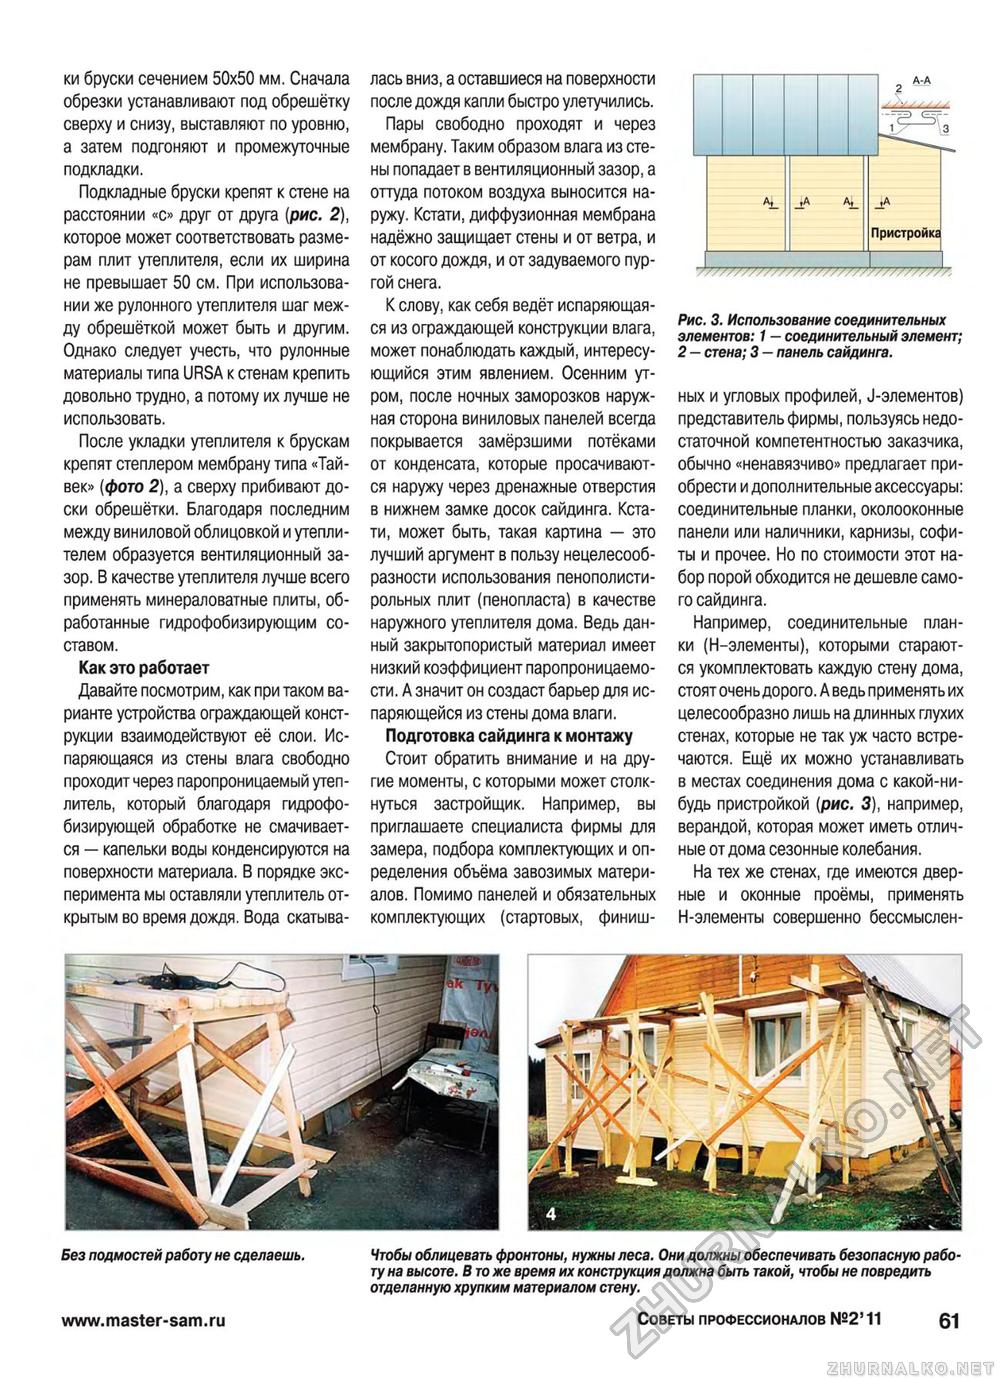 Советы профессионалов 2011-02, страница 61